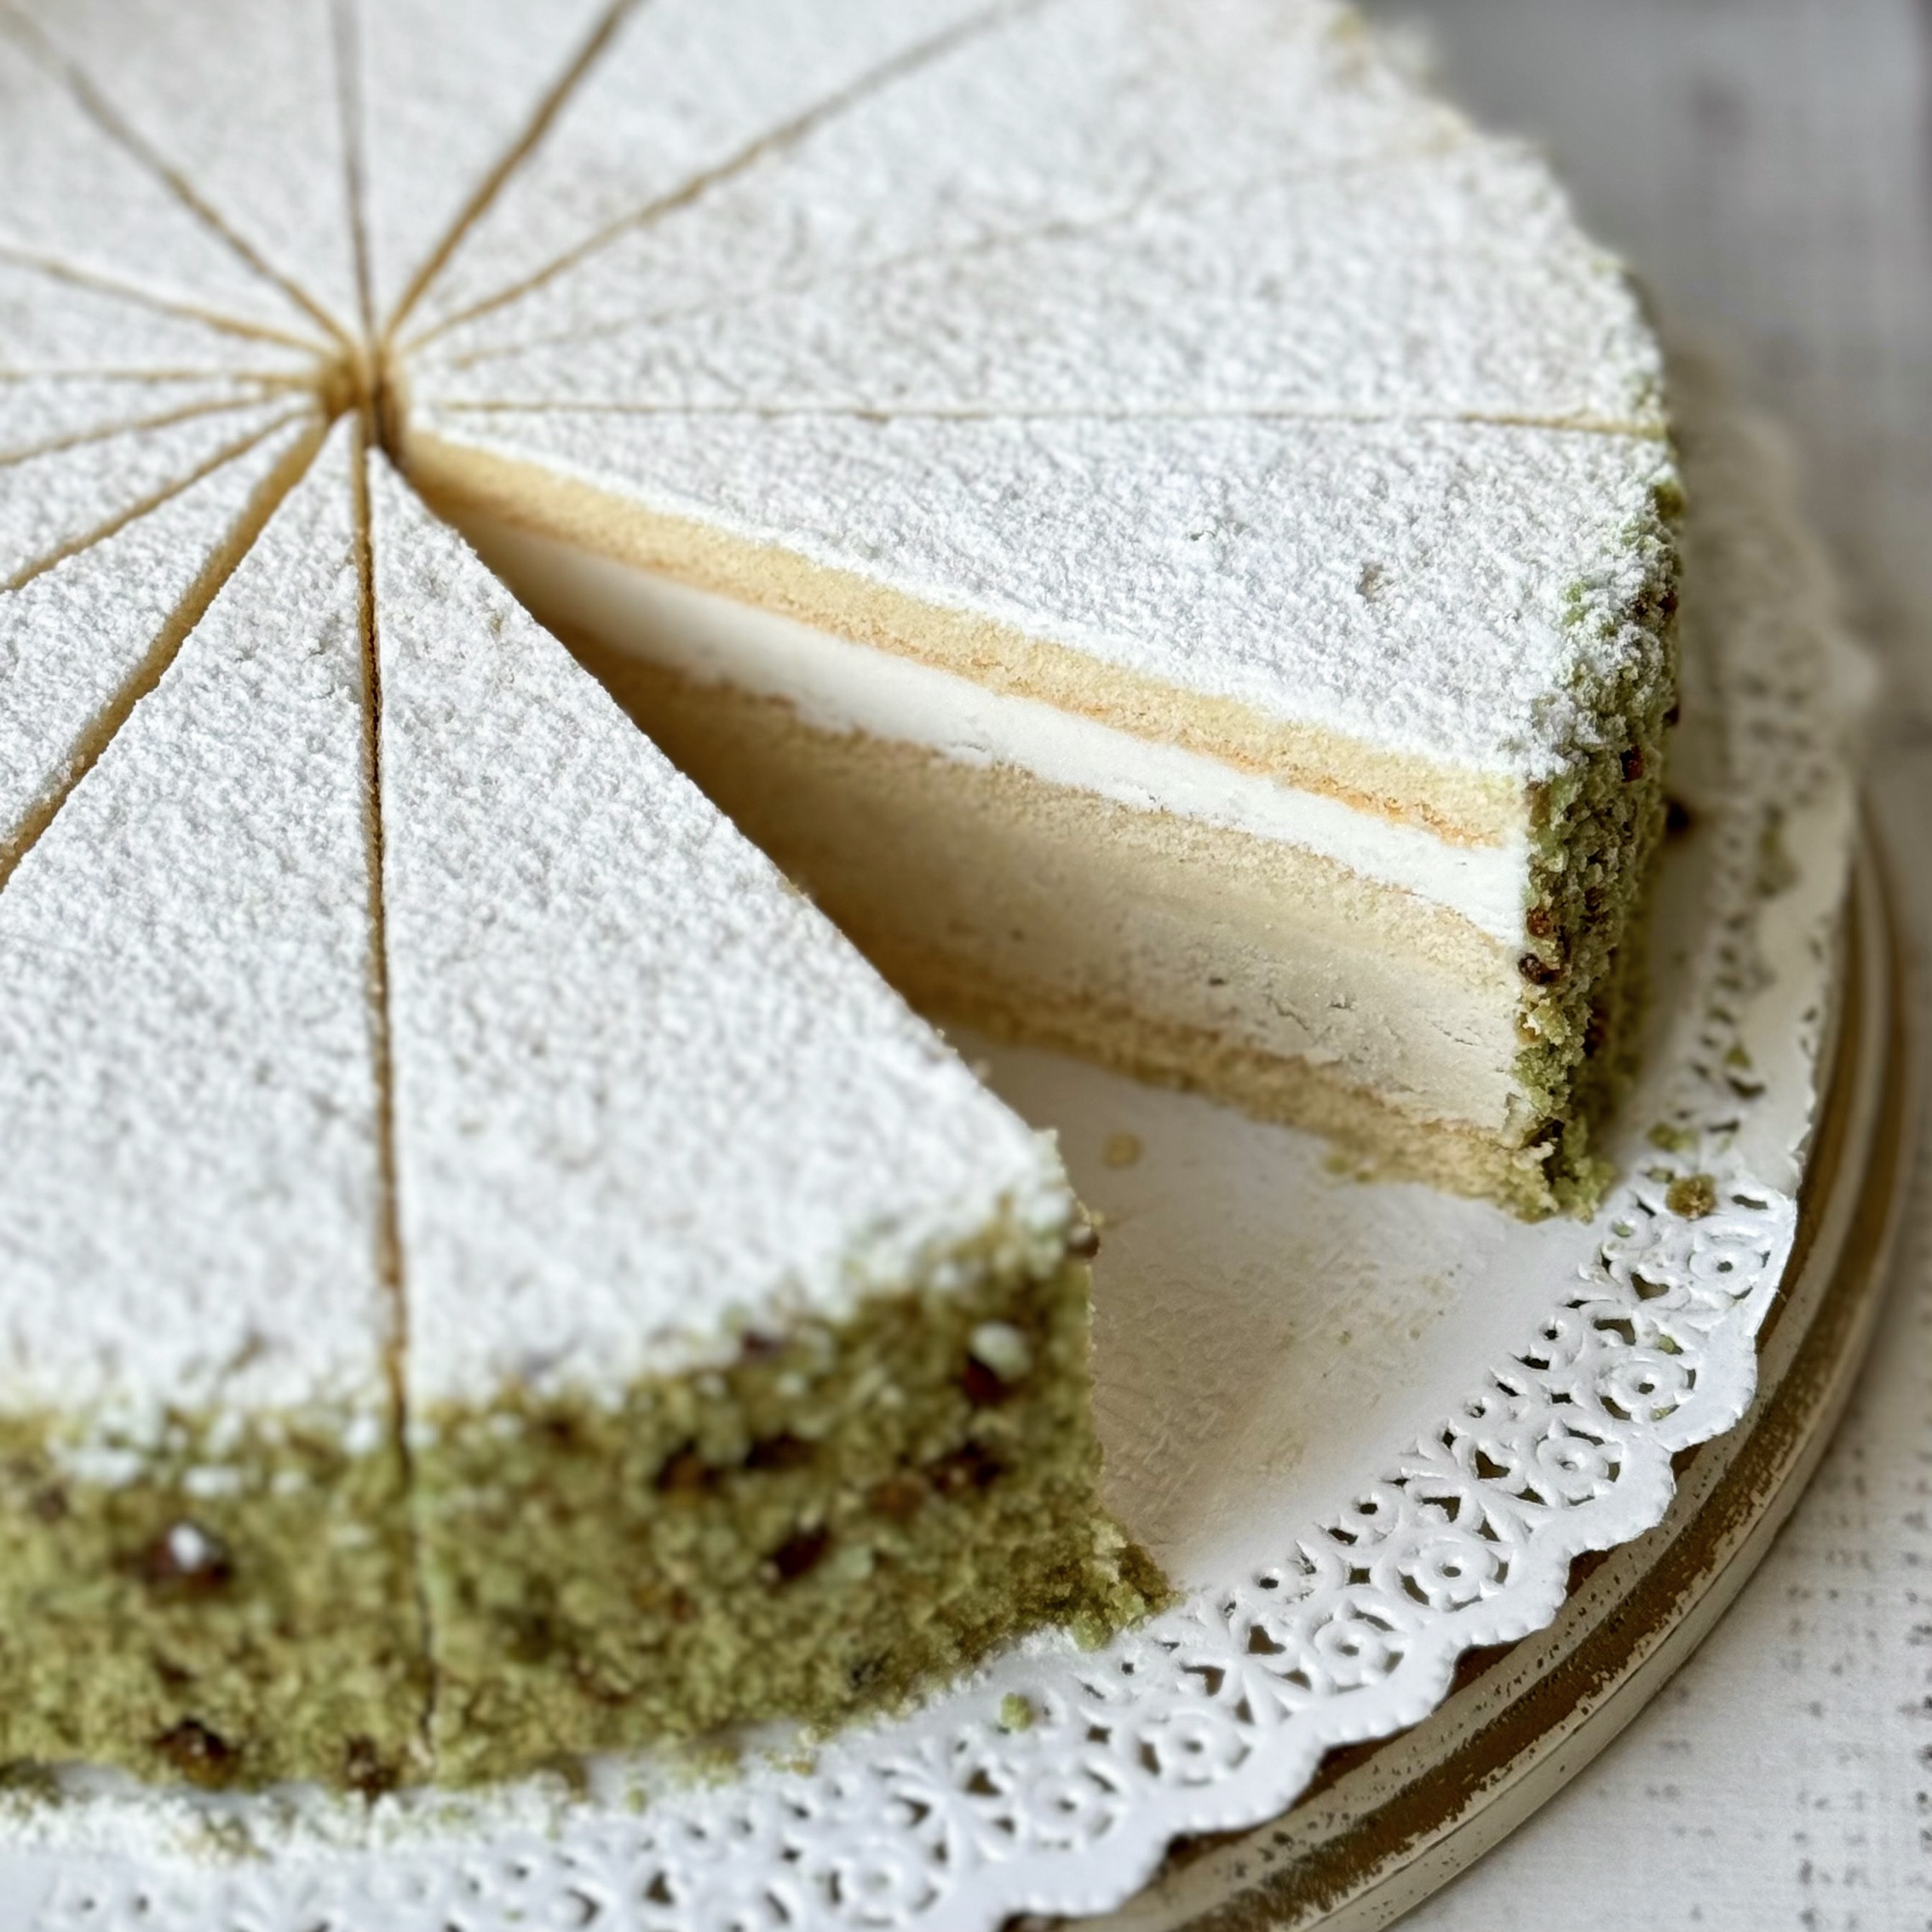 Бисквитный торт трехслойный с кремом на основе сыра рикотта и фисташковым кремом изображение 2